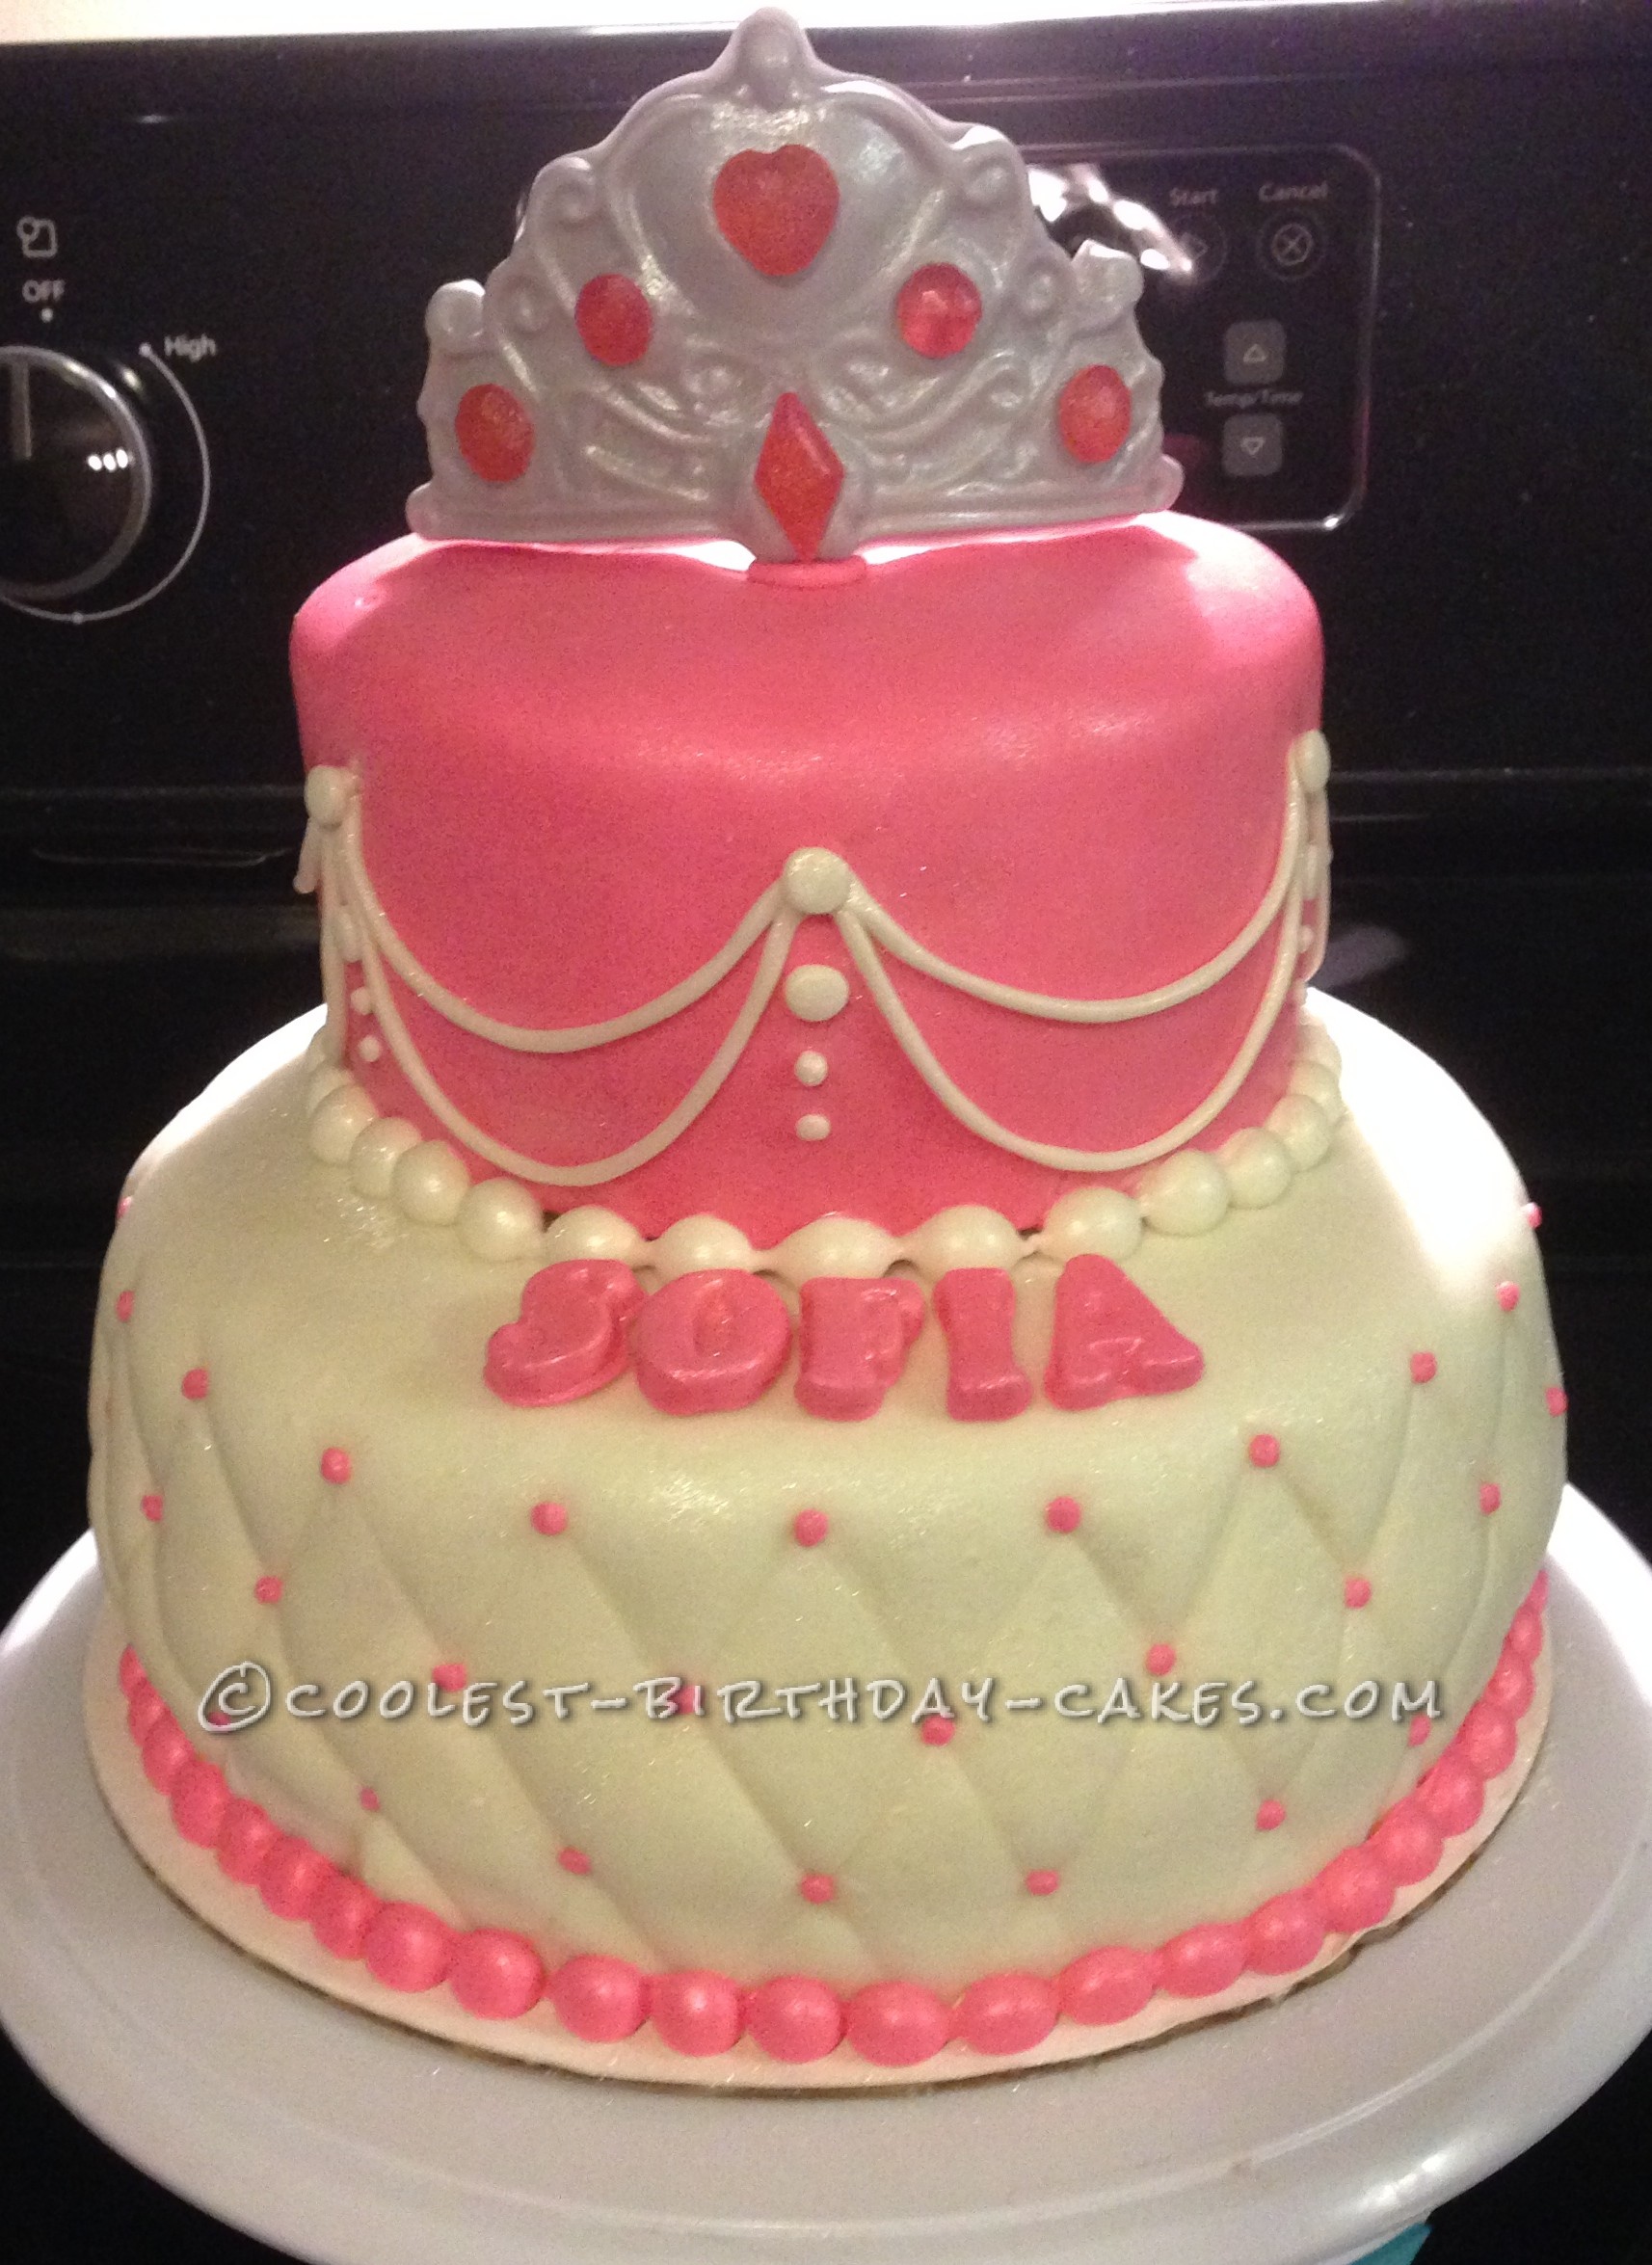 Beautiful Last-Minute Princess Birthday Cake